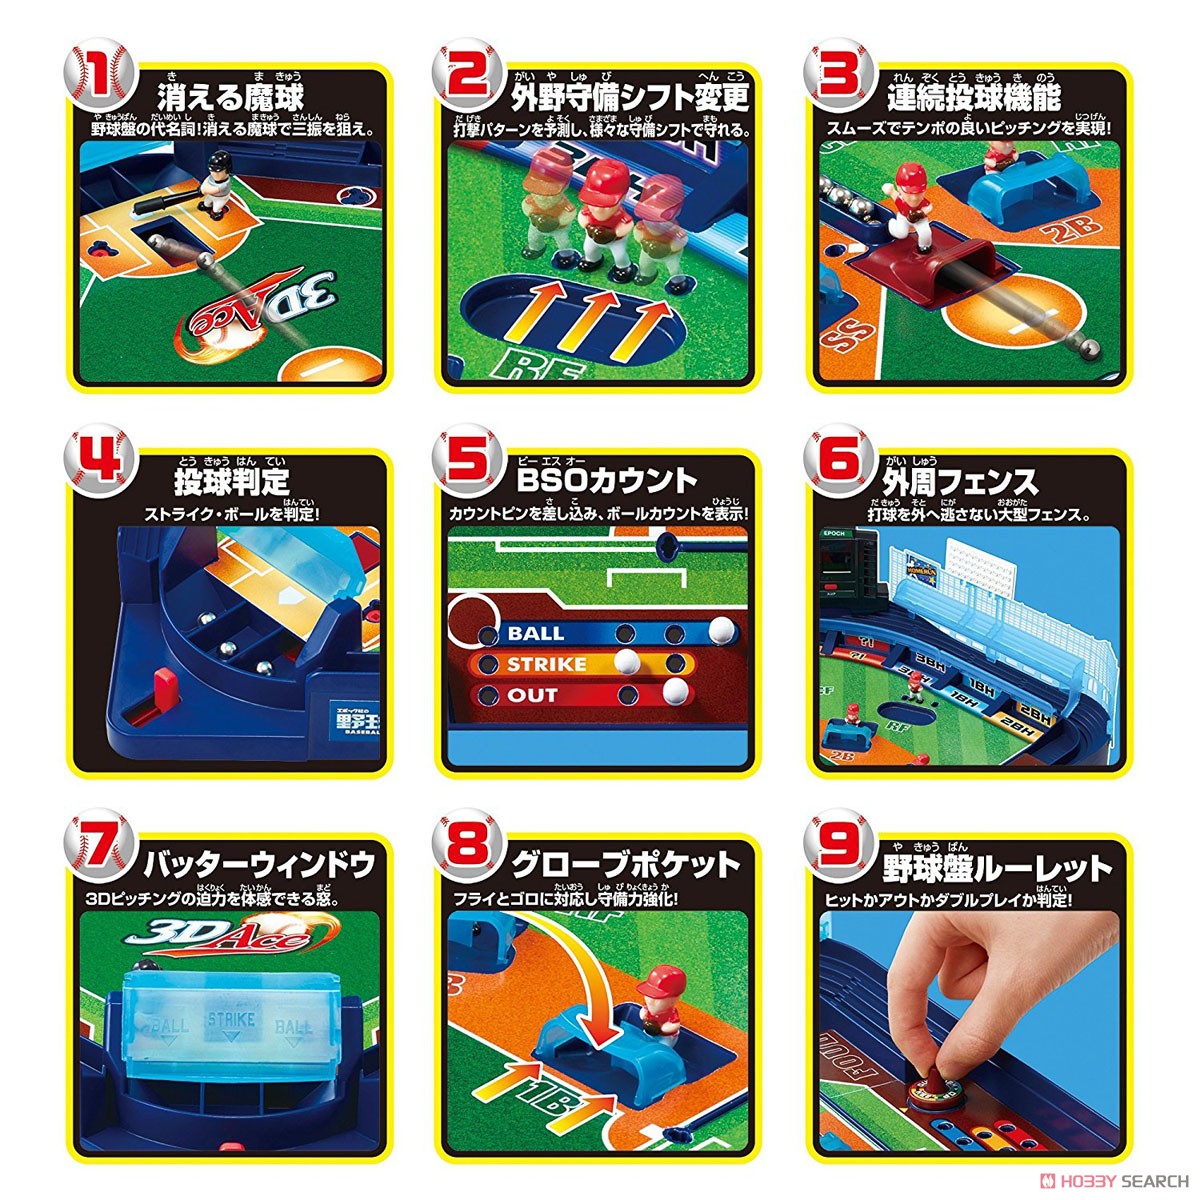 60周年限定 野球盤 3Dエース オーロラビジョン (テーブルゲーム) 商品画像7